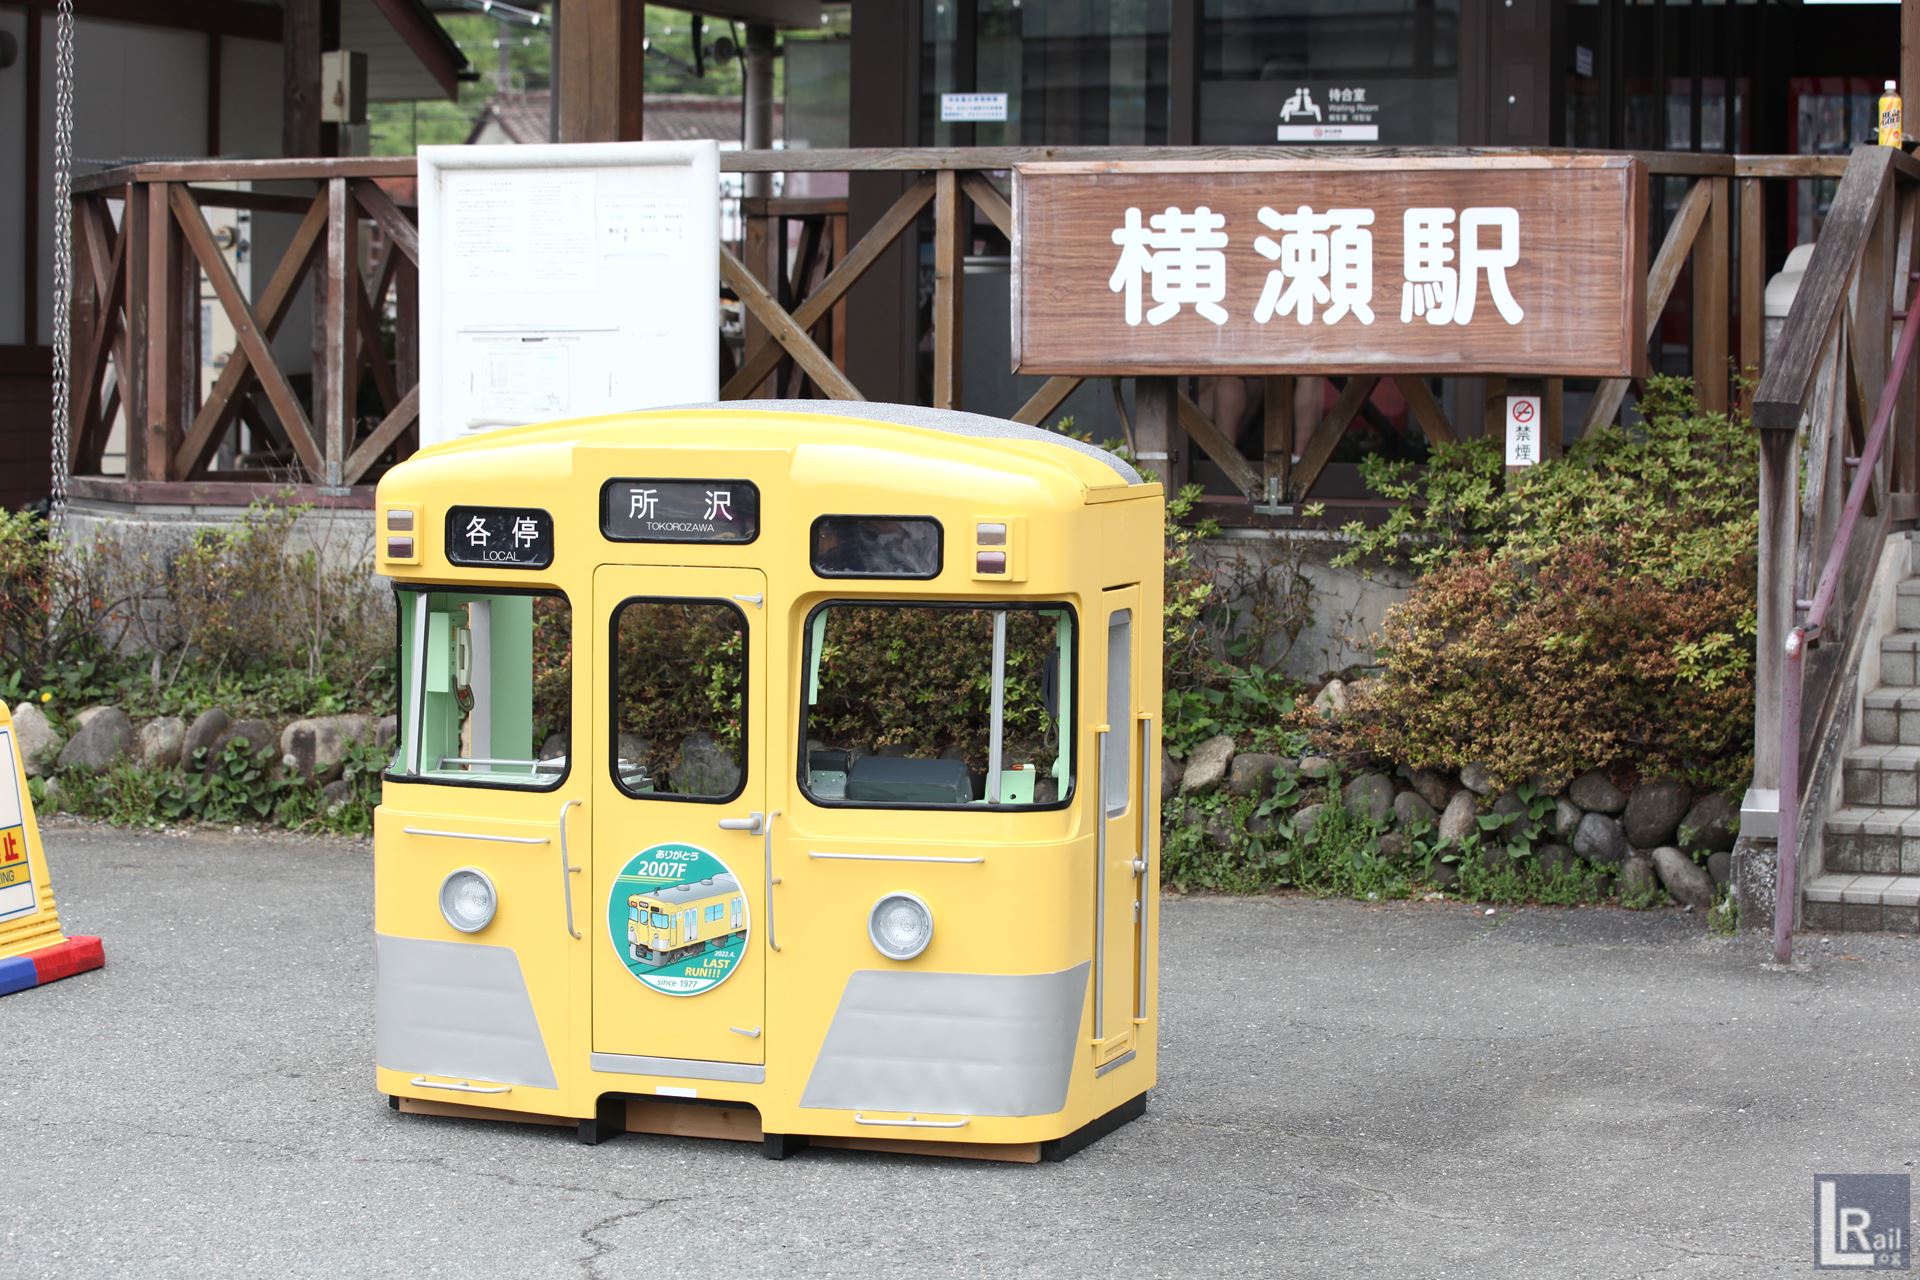 横瀬駅前の広場には、クハ2007を模したモックアップも設置されていました。